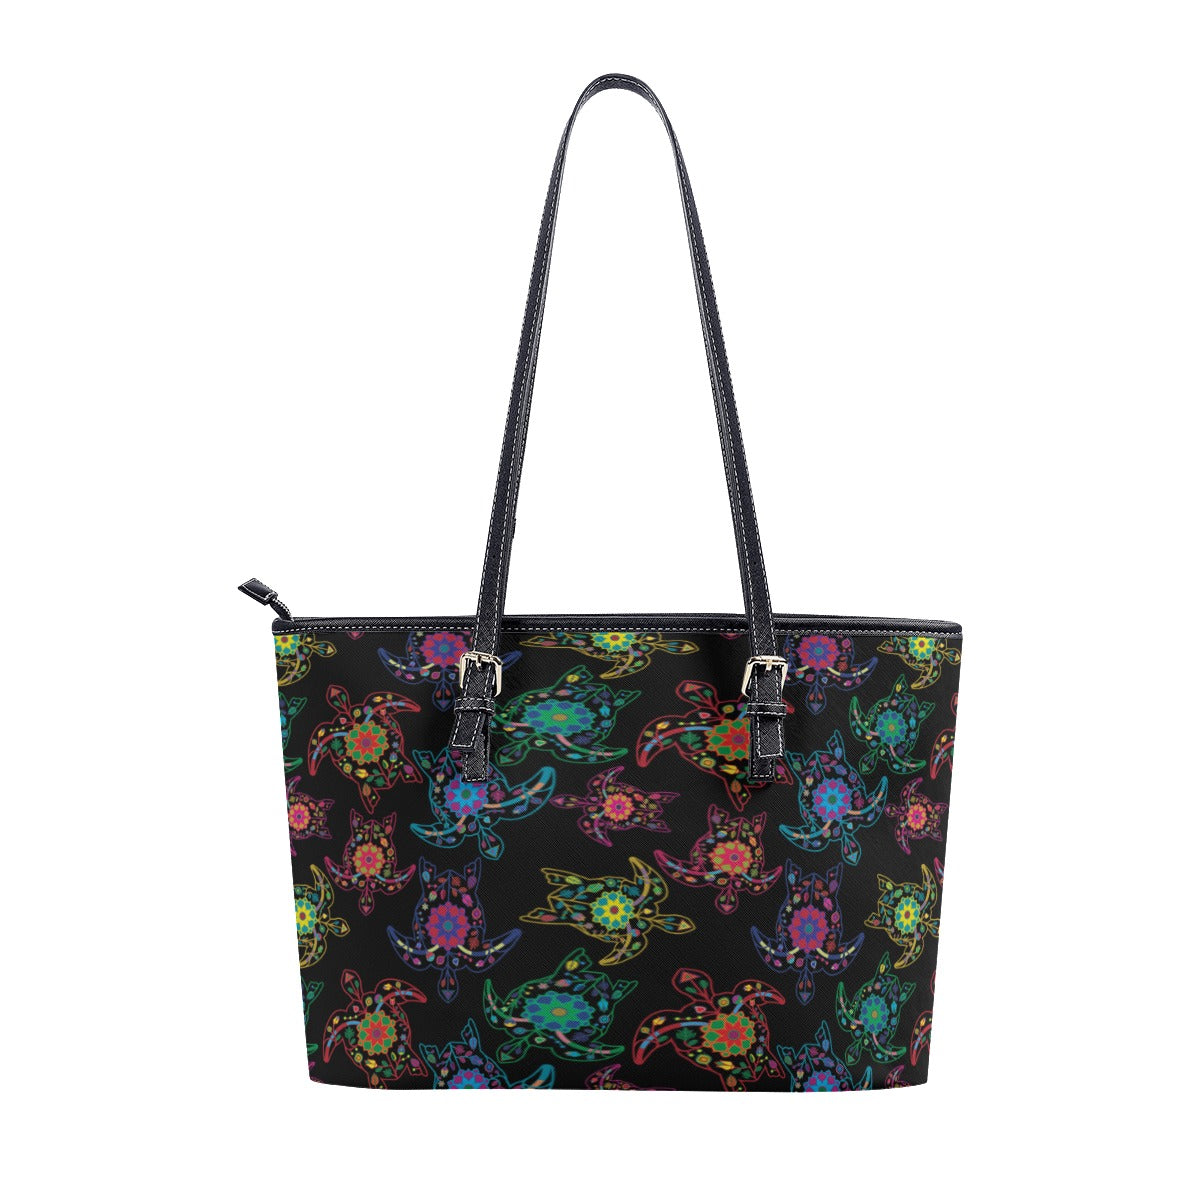 Neon Floral Turtles Tote Handbag